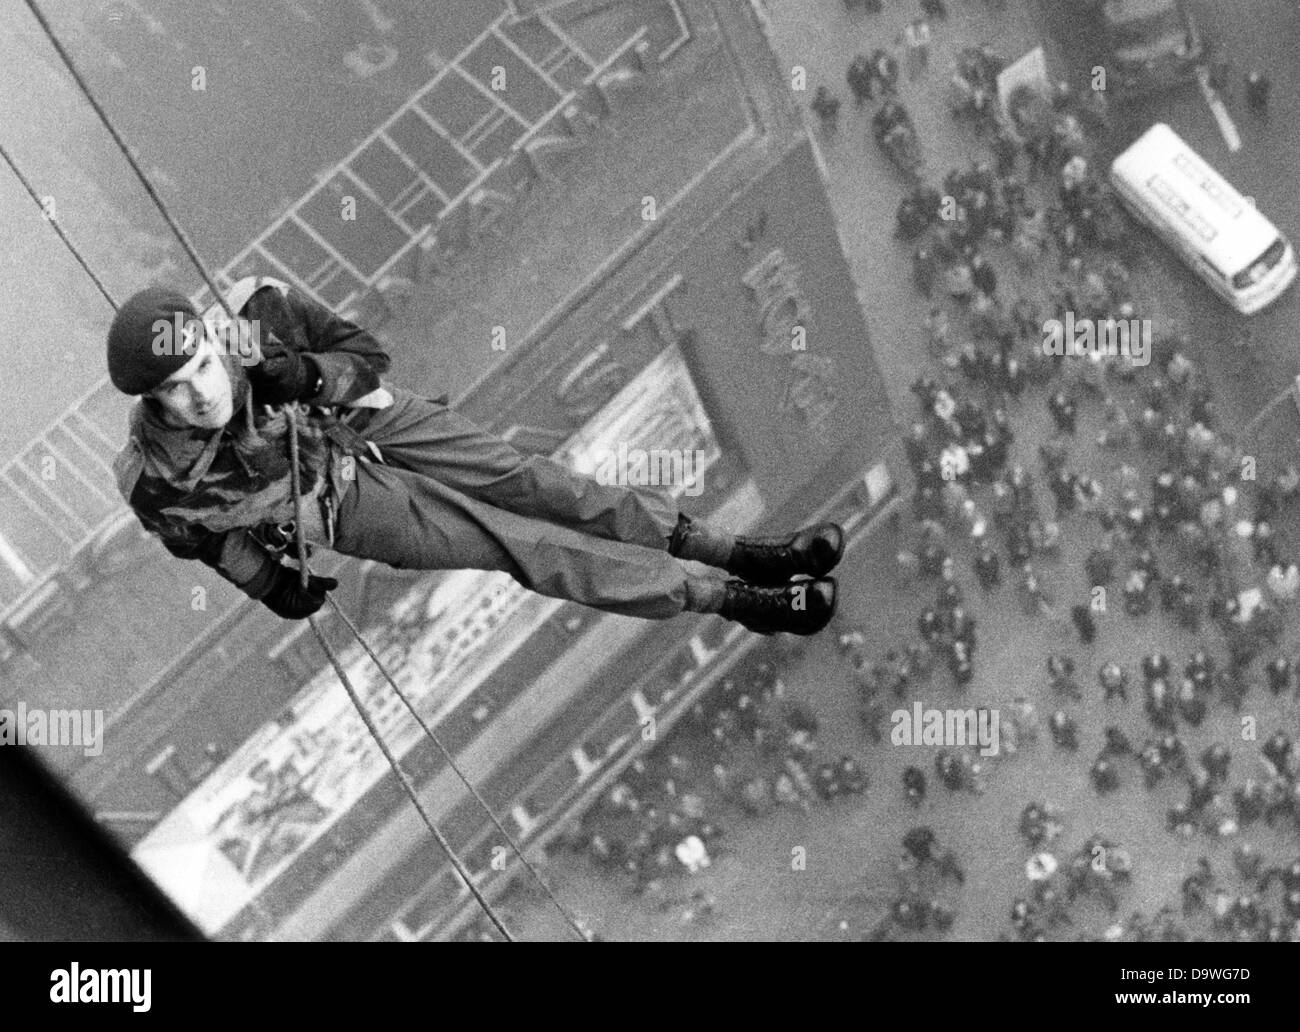 Ein britischer Fallschirmspringer Seile nach unten aus der mehr als 87 Meter hohe Europa-Center in Berlin am 3. November 1975. Die Fallschirmspringer wollte mit dieser atemberaubenden Kampagne werben, zeigen das britische Militär britische Berlin Tattoo in der Deutschlandhalle in Berlin stattfindet. Stockfoto